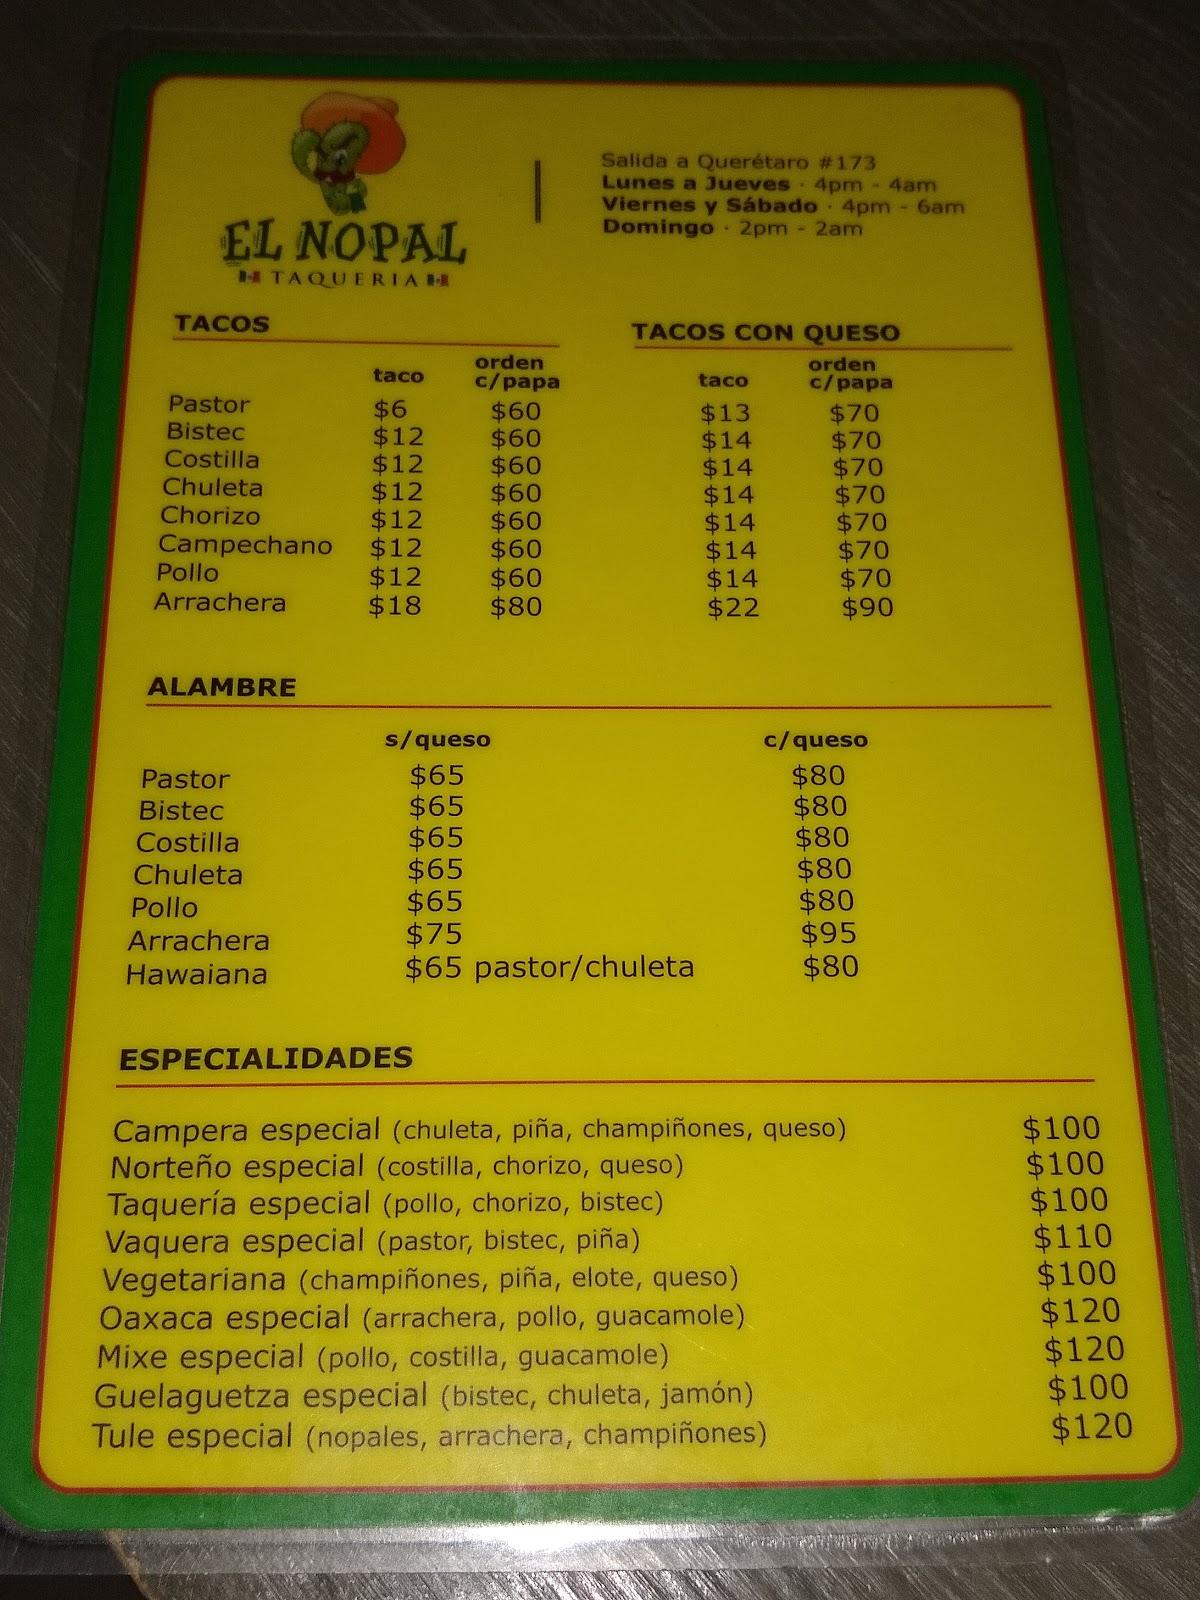 Menu at Taquería El Nopal restaurant, San Miguel de Allende, Salida